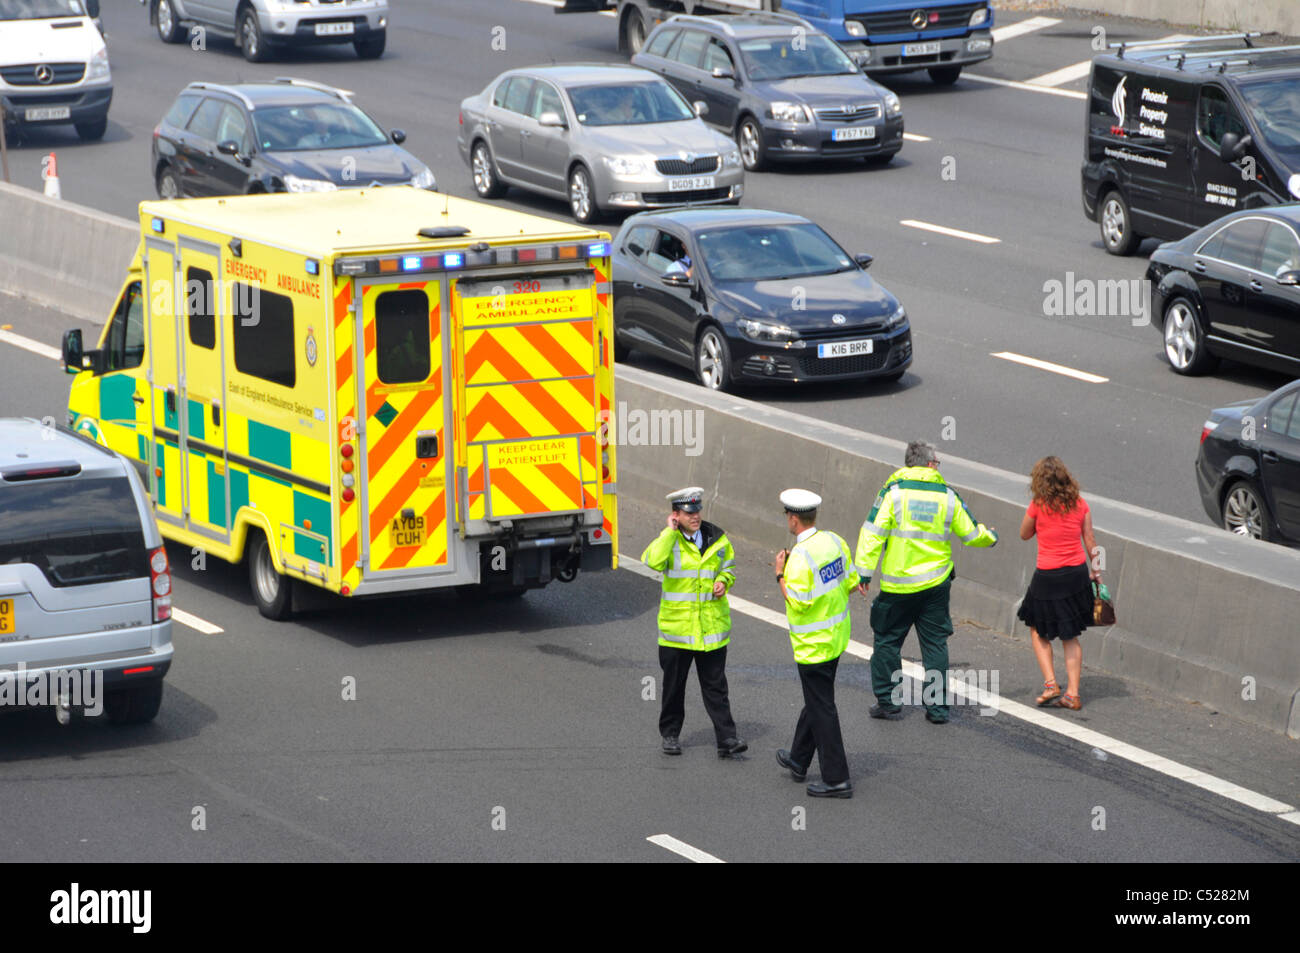 Sanitäter Escort Frau, die wartenden Krankenwagen in Szene der Autobahn Auto crash (unter Brücke), während Polizeikontrolle Unfallhergang Stockfoto